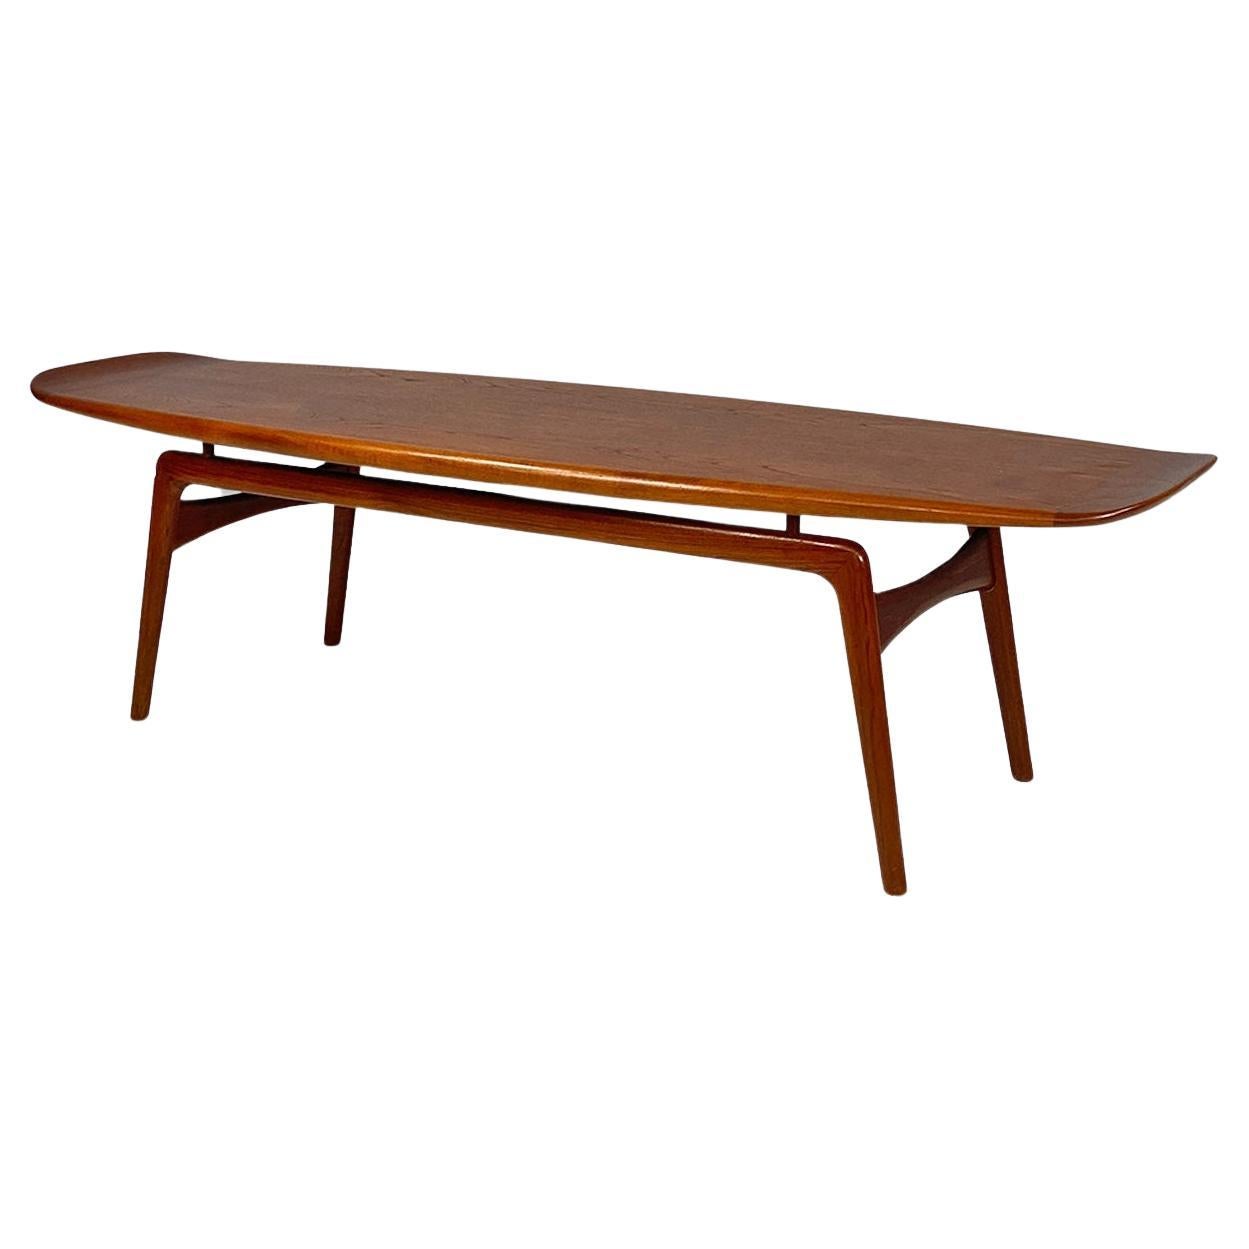 Danish mid-century teak surfboard table by Hovmand-Olsen for Mogens Kold, 1960s For Sale